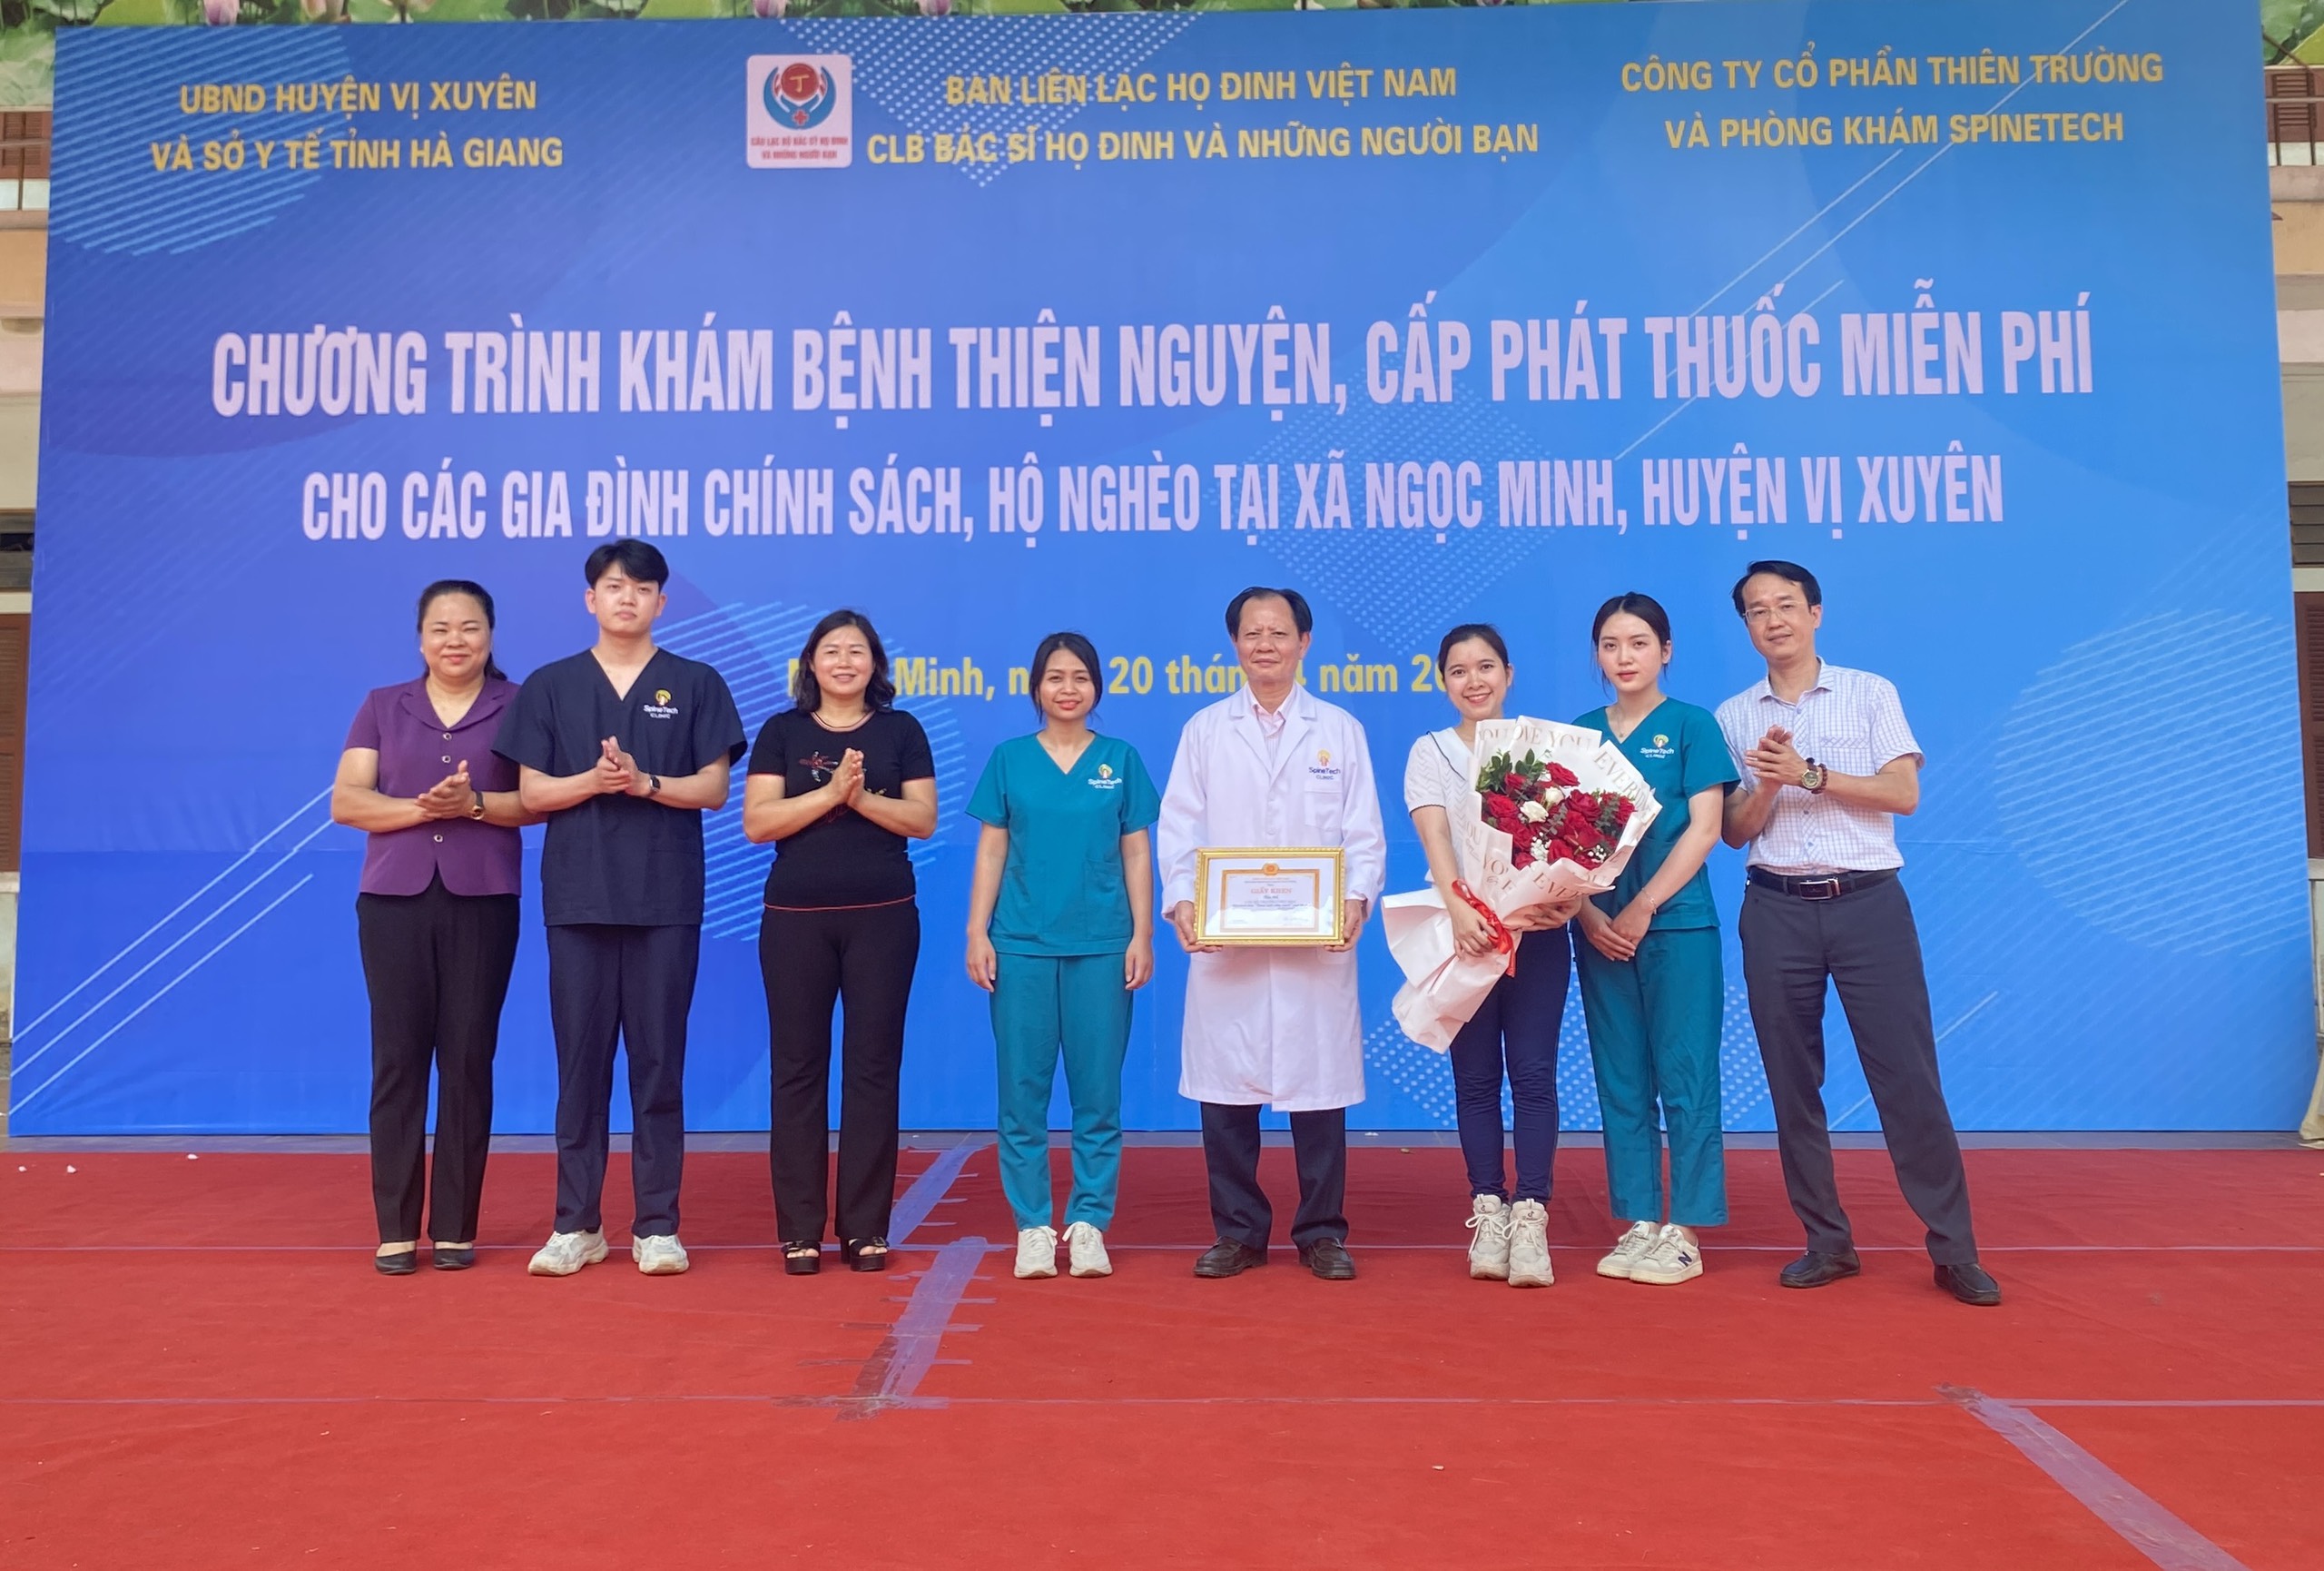 Câu lạc bộ bác sĩ họ Đinh và những người bạn khám chữa bệnh thiện nguyện tại xã Ngọc Minh, huyện Vị Xuyên